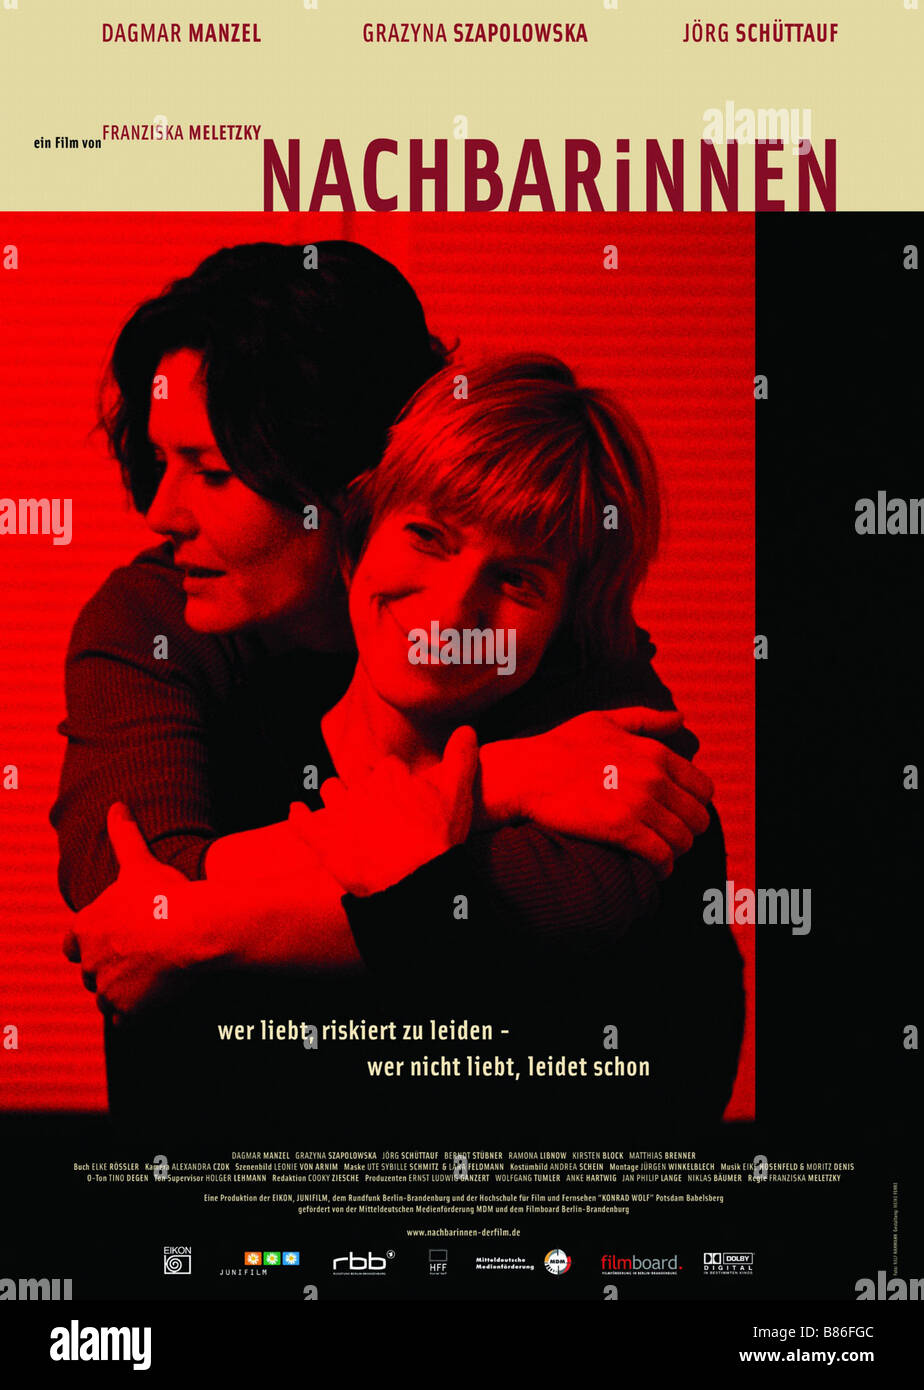 Nachbarinnen Nachbarinnen Jahr: 2004 - Deutschland Affiche/Poster Grazyna Szapolowska, Dagmar Manzel Regie: Franziska Meletzky Stockfoto